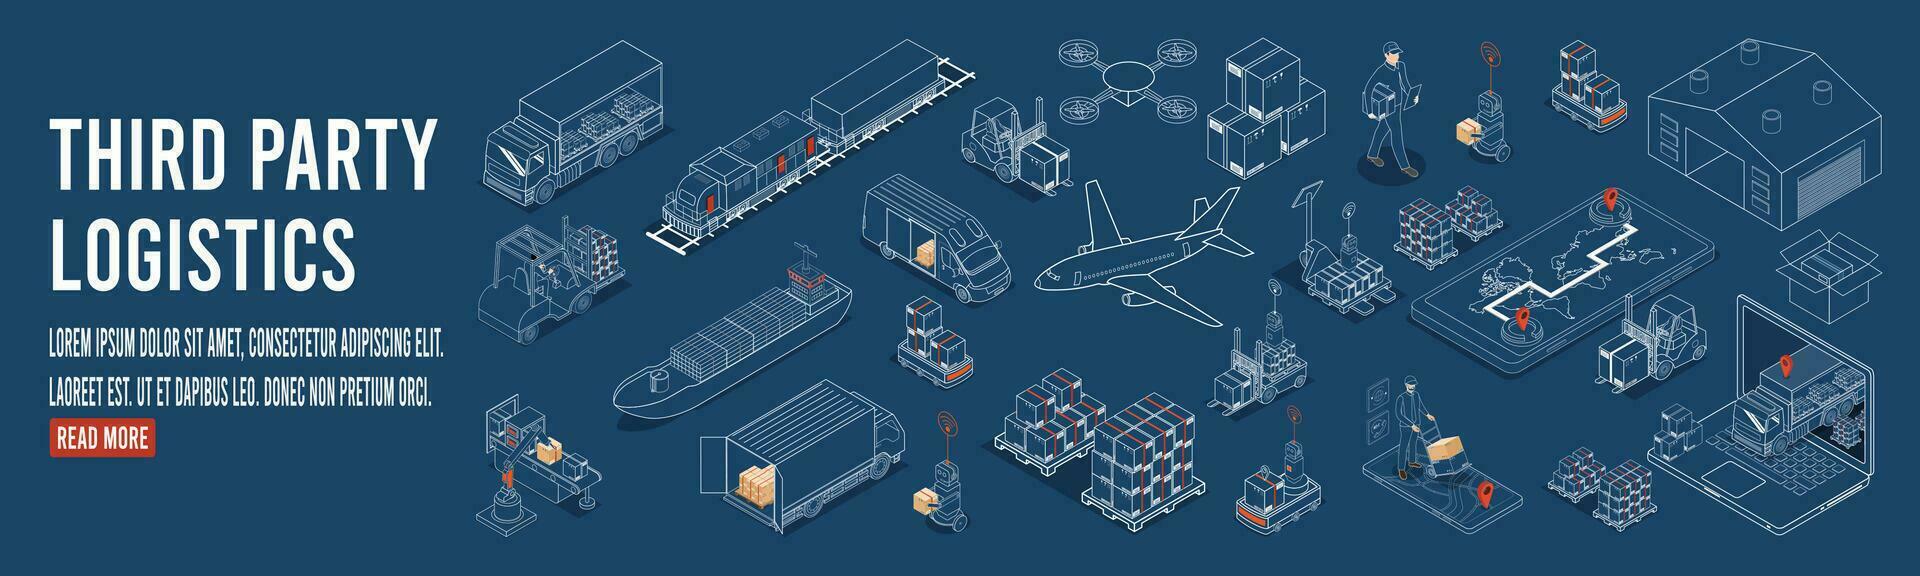 derde partij logistiek concept met autonoom robots, robot arm, karton doos, vervoer, vrachtwagen, exporteren, importeren, industrie 4.0, magazijn en fabriek automatisering. vector illustratie eps10